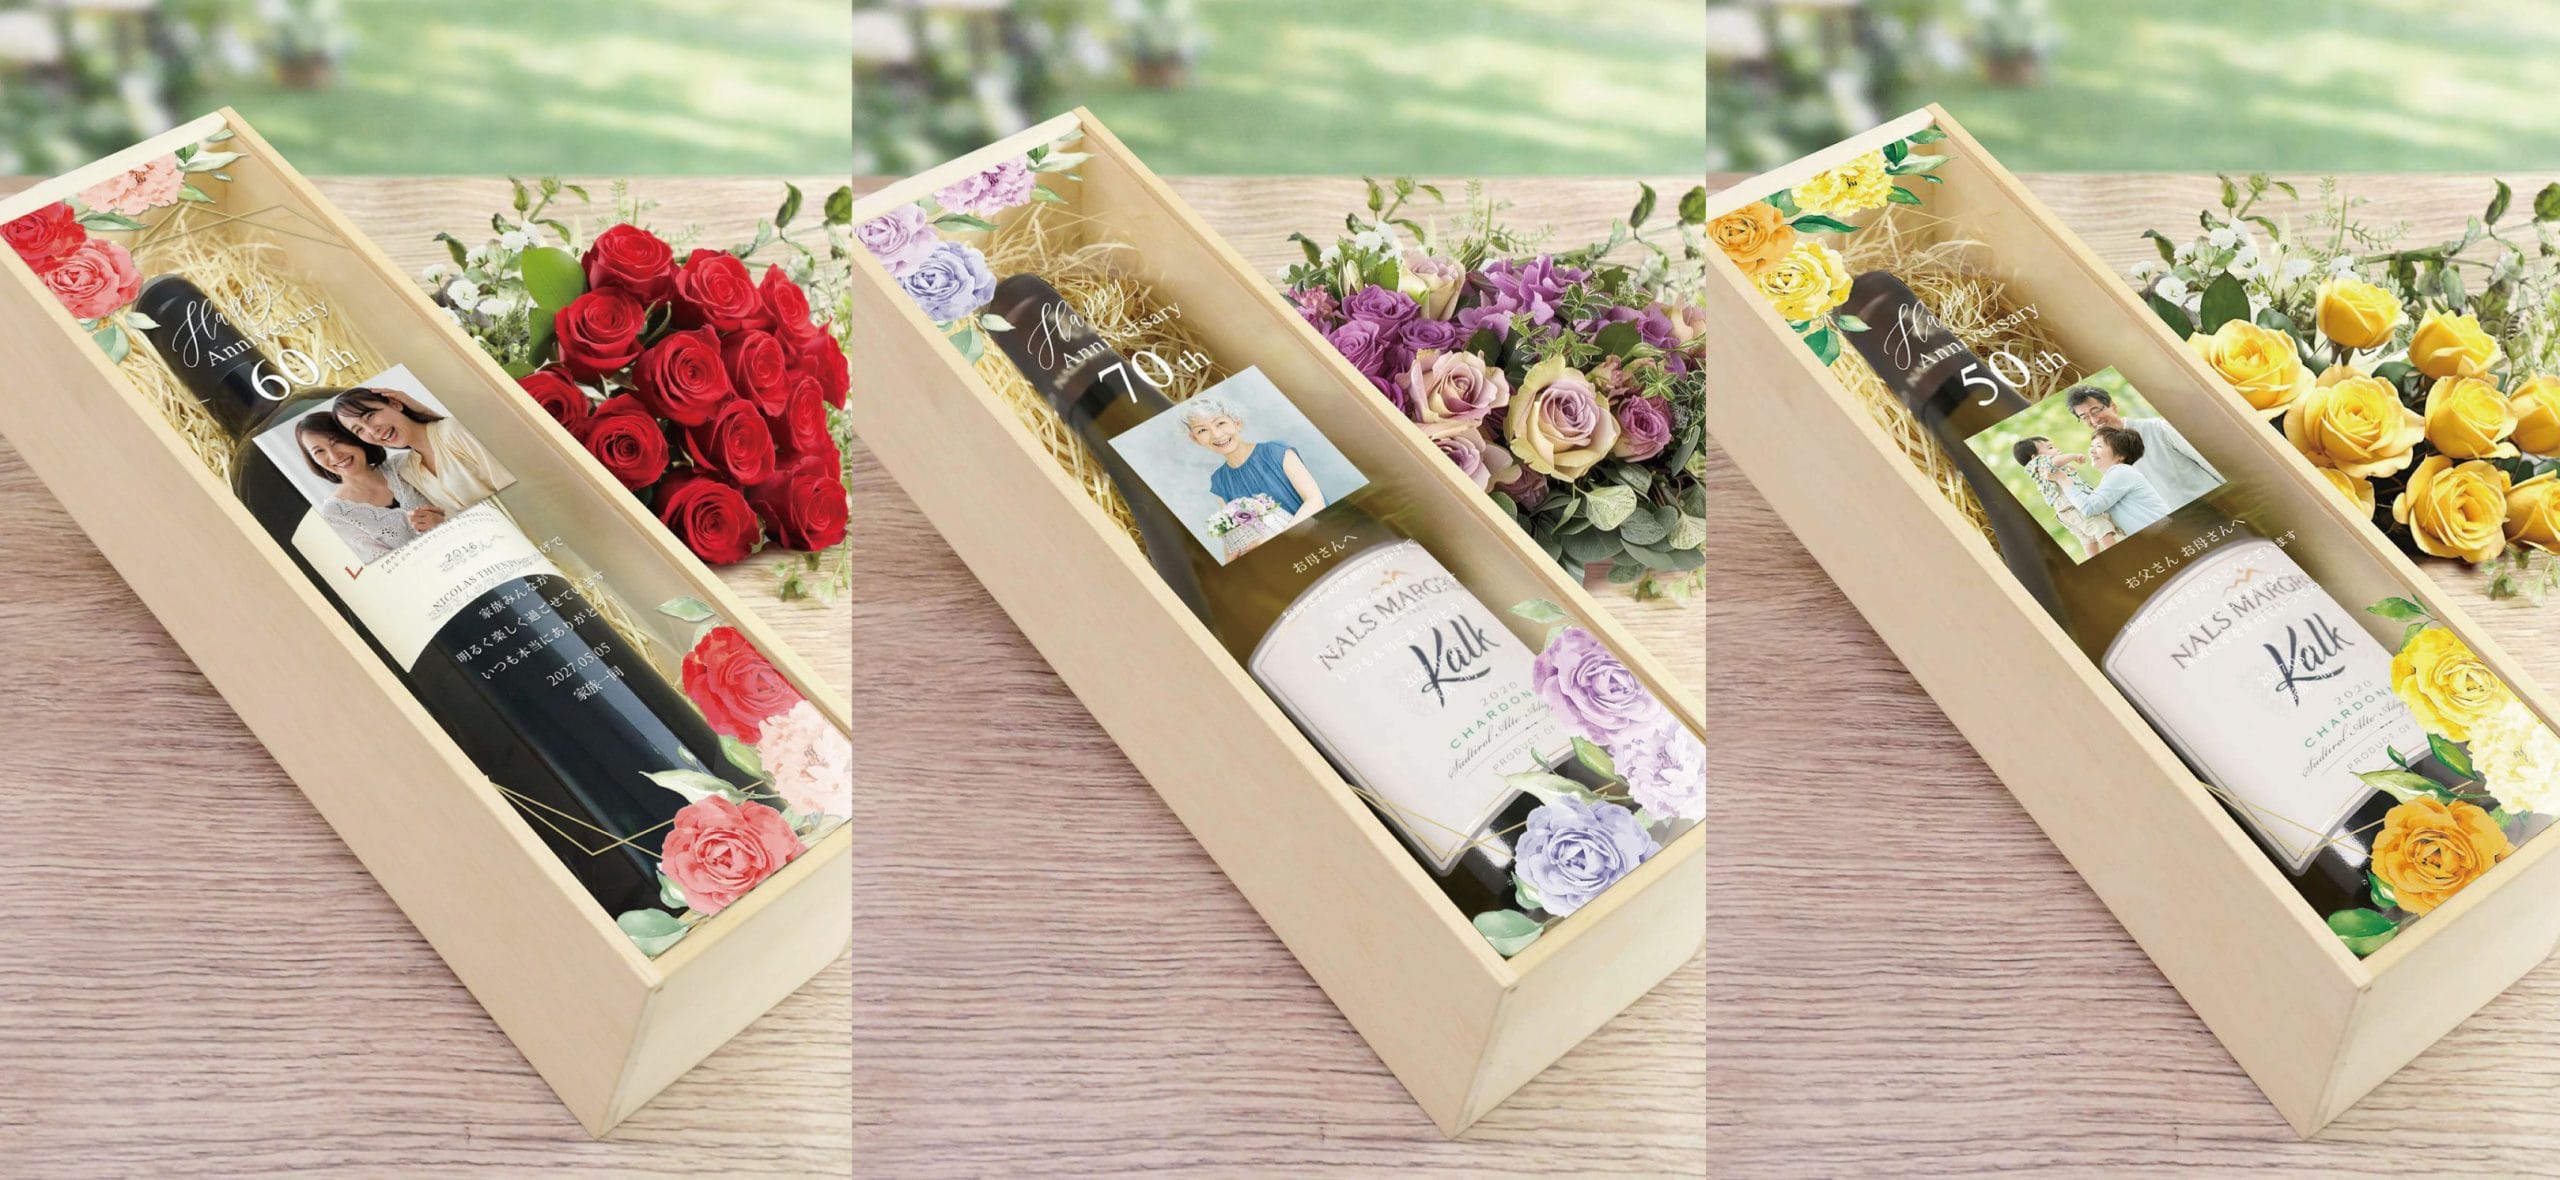 還暦古希喜寿の長寿のお祝いや結婚50周年の金婚式のお祝いで贈る写真とメッセージ入りの木箱付ワインギフト